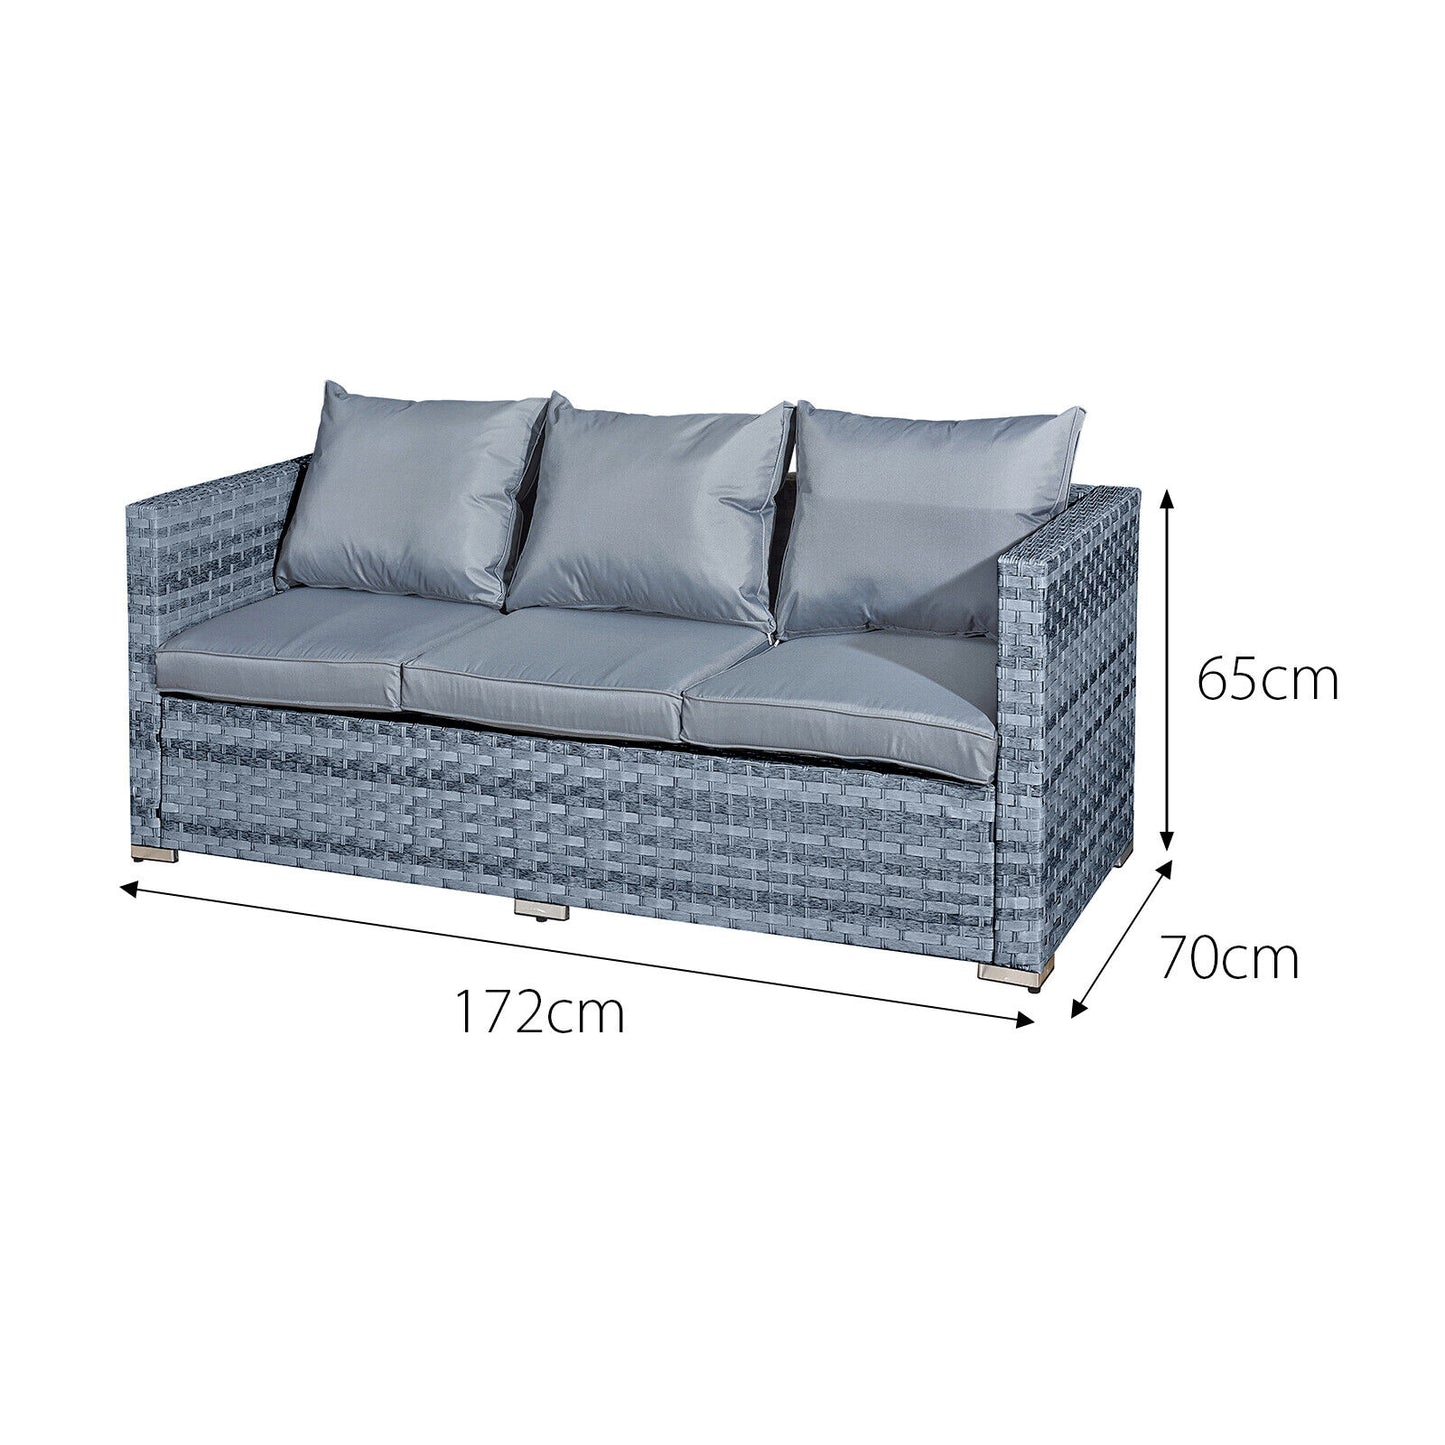 Acorn Rattan 5 Seat Lounge Sofa Set in Ocean Grey